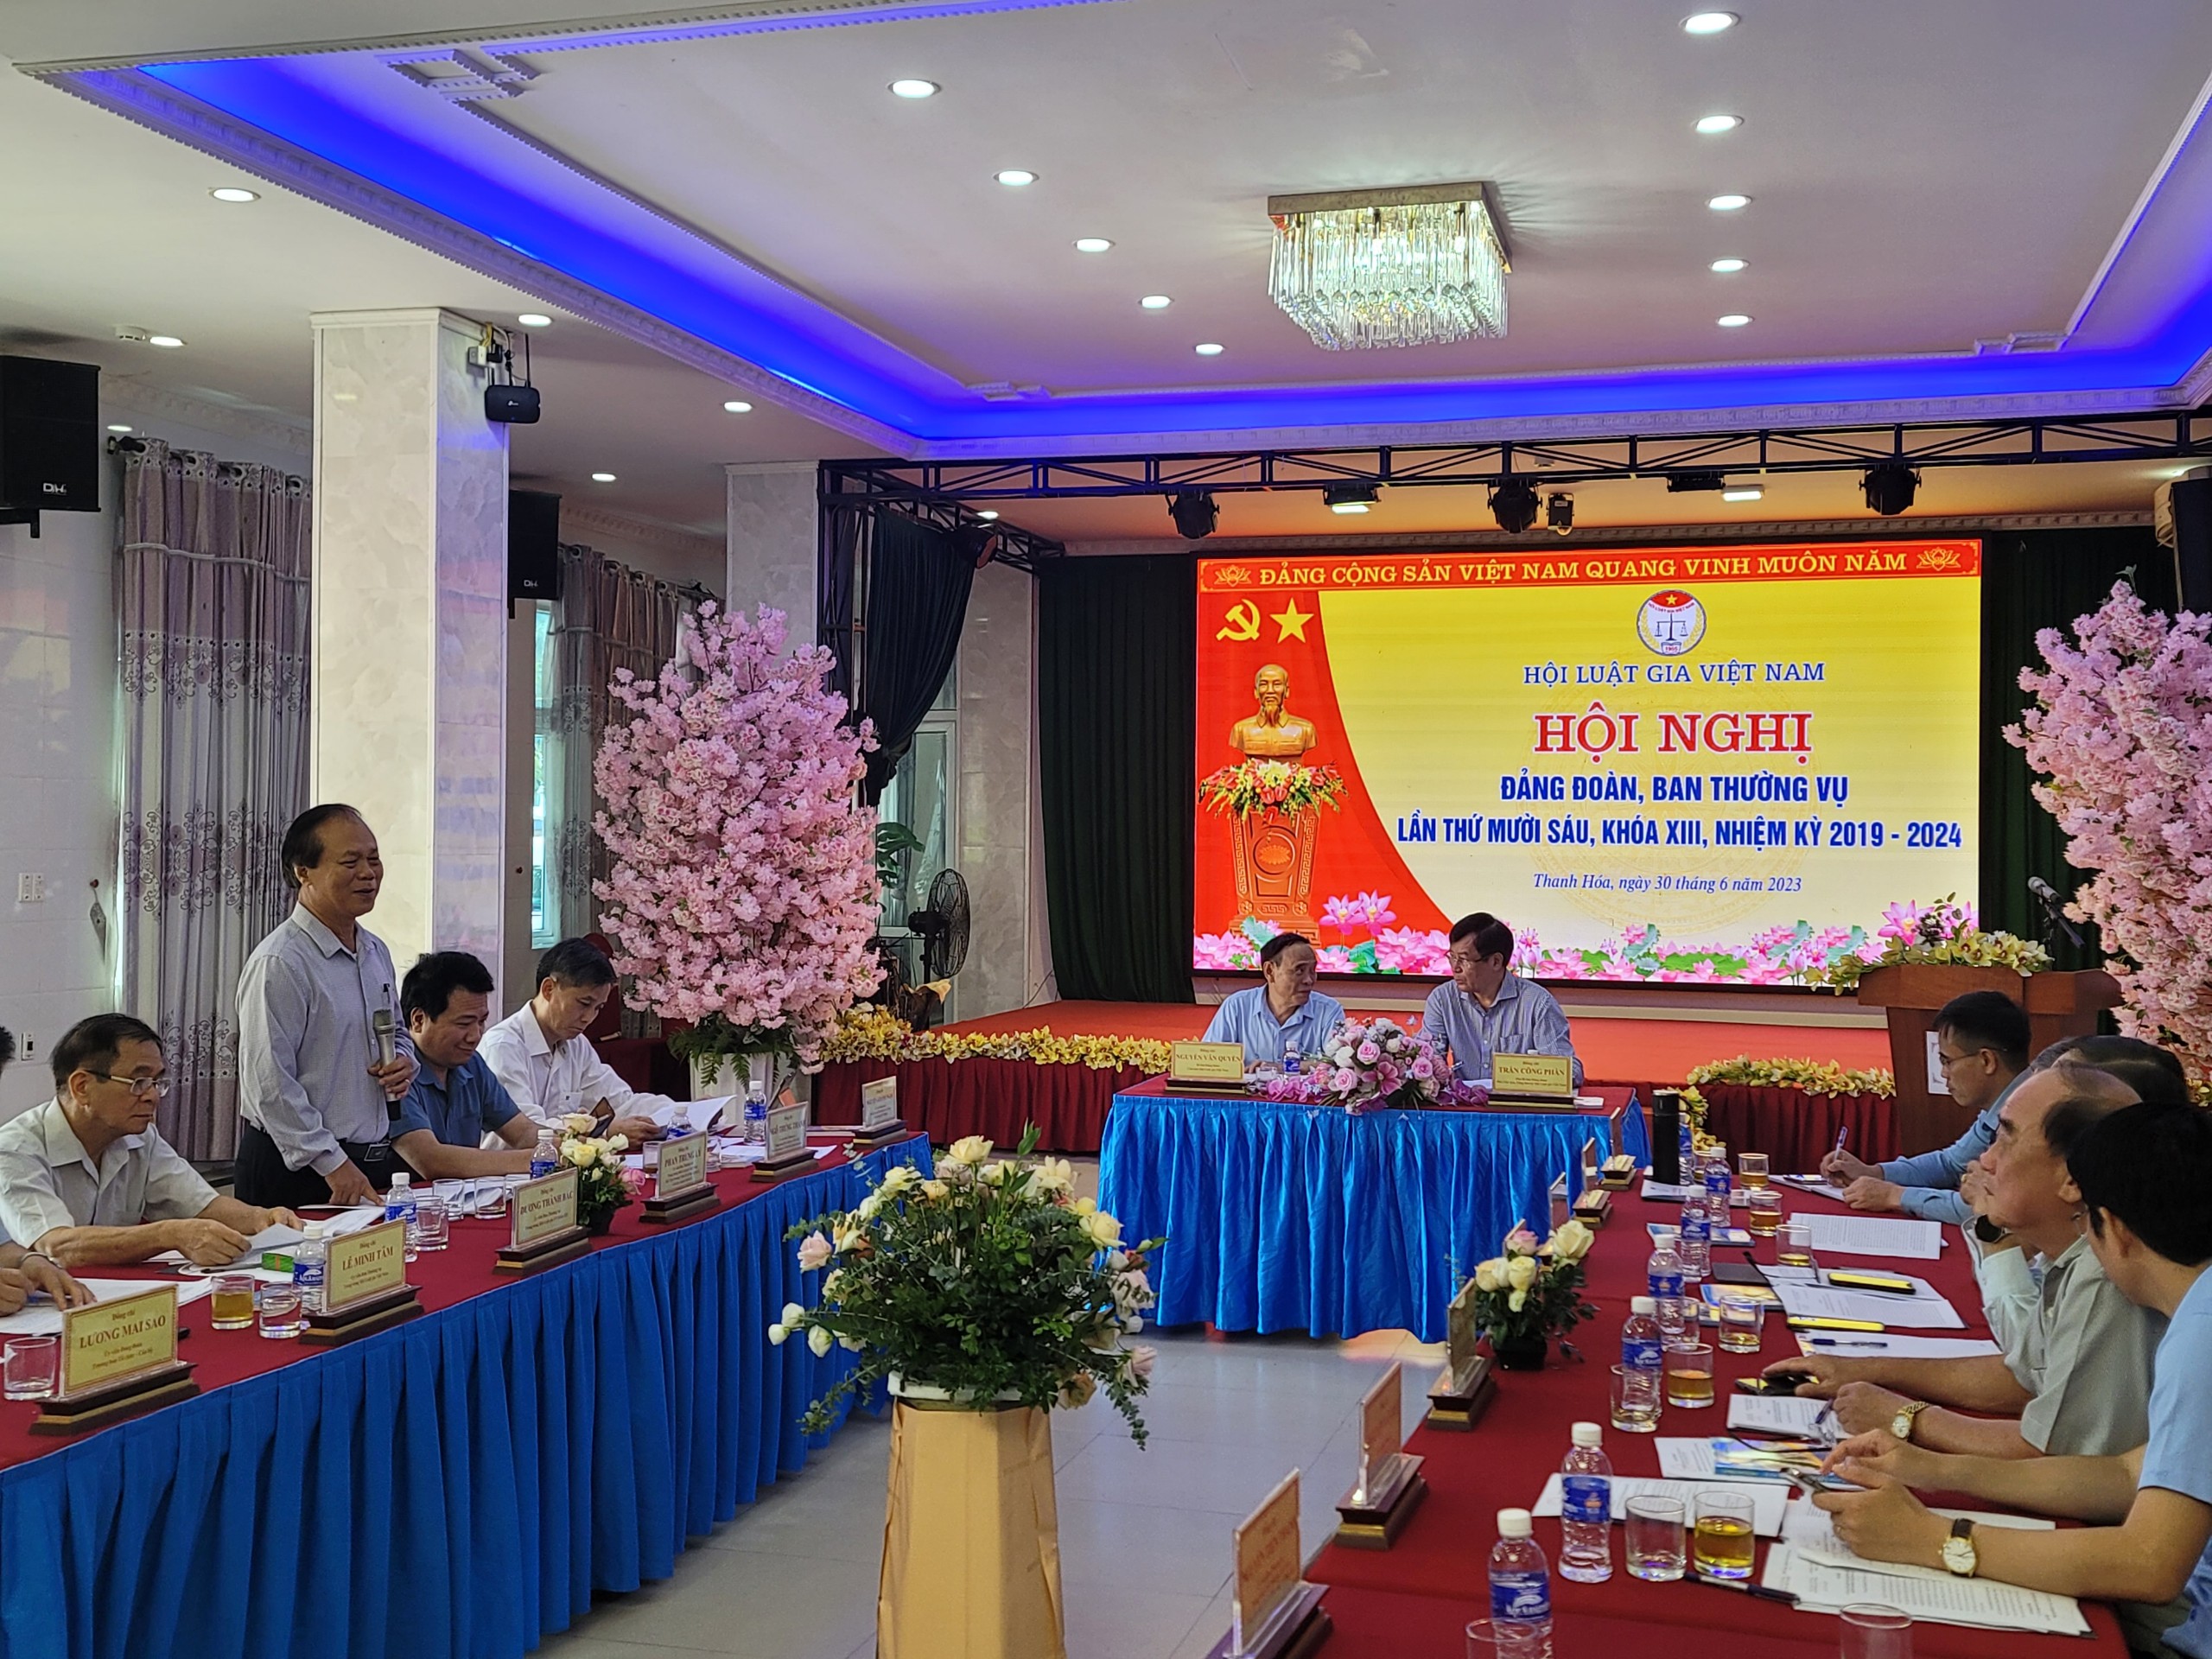 Tiêu điểm - Hội Luật gia Việt Nam tổ chức Hội nghị Đảng đoàn, Ban thường vụ khóa XIII (Hình 6).